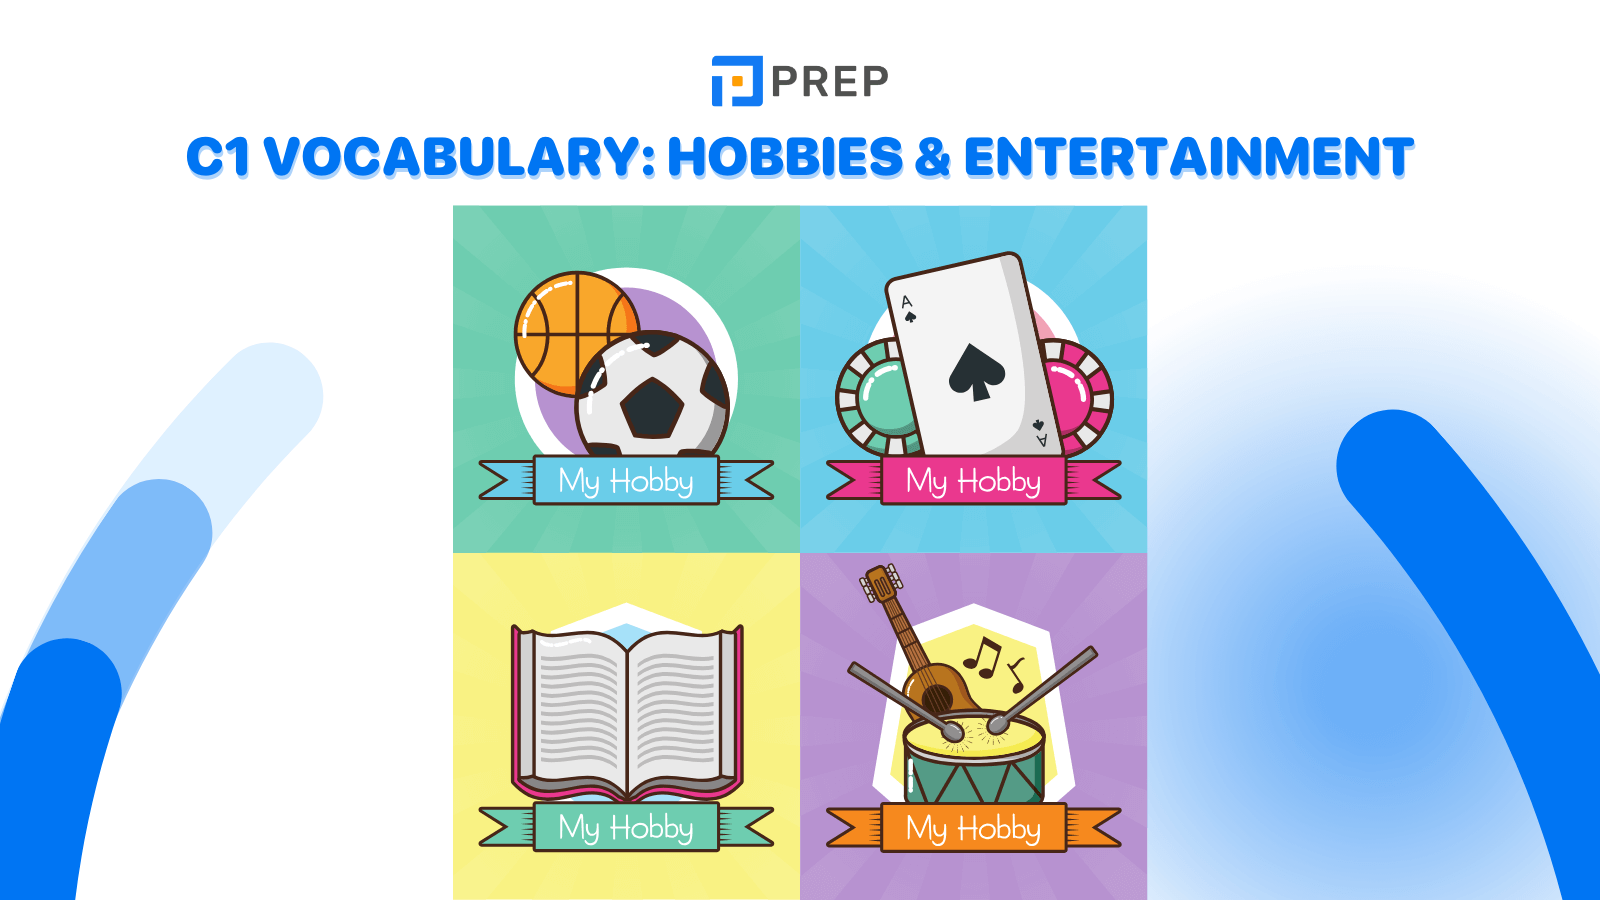 C1 vocabulary: Hobbies & Entertainment